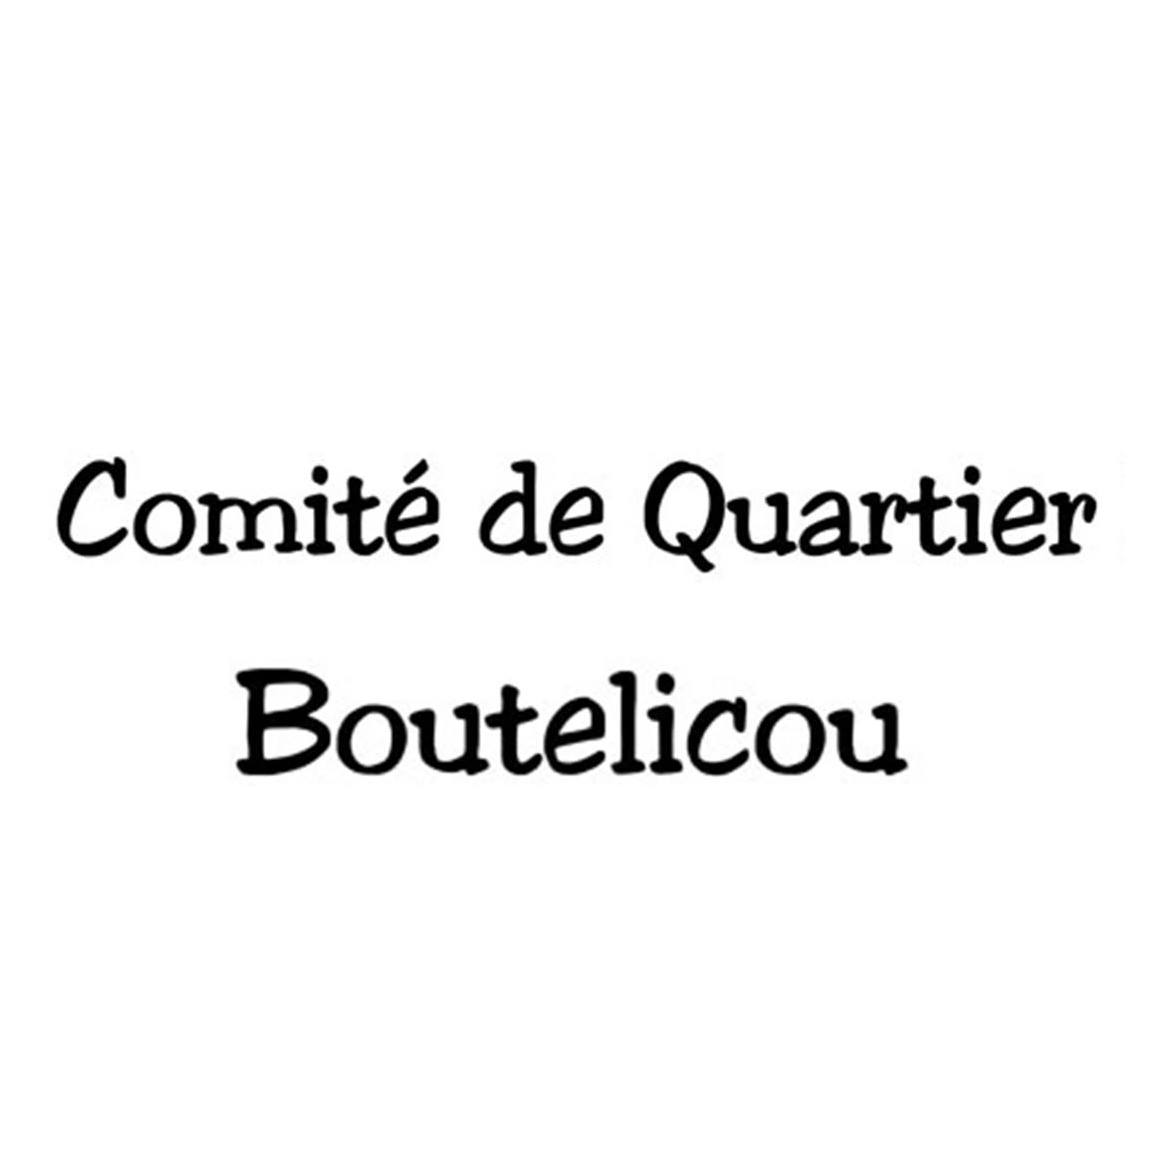 Comité de quartier du Boutelicou